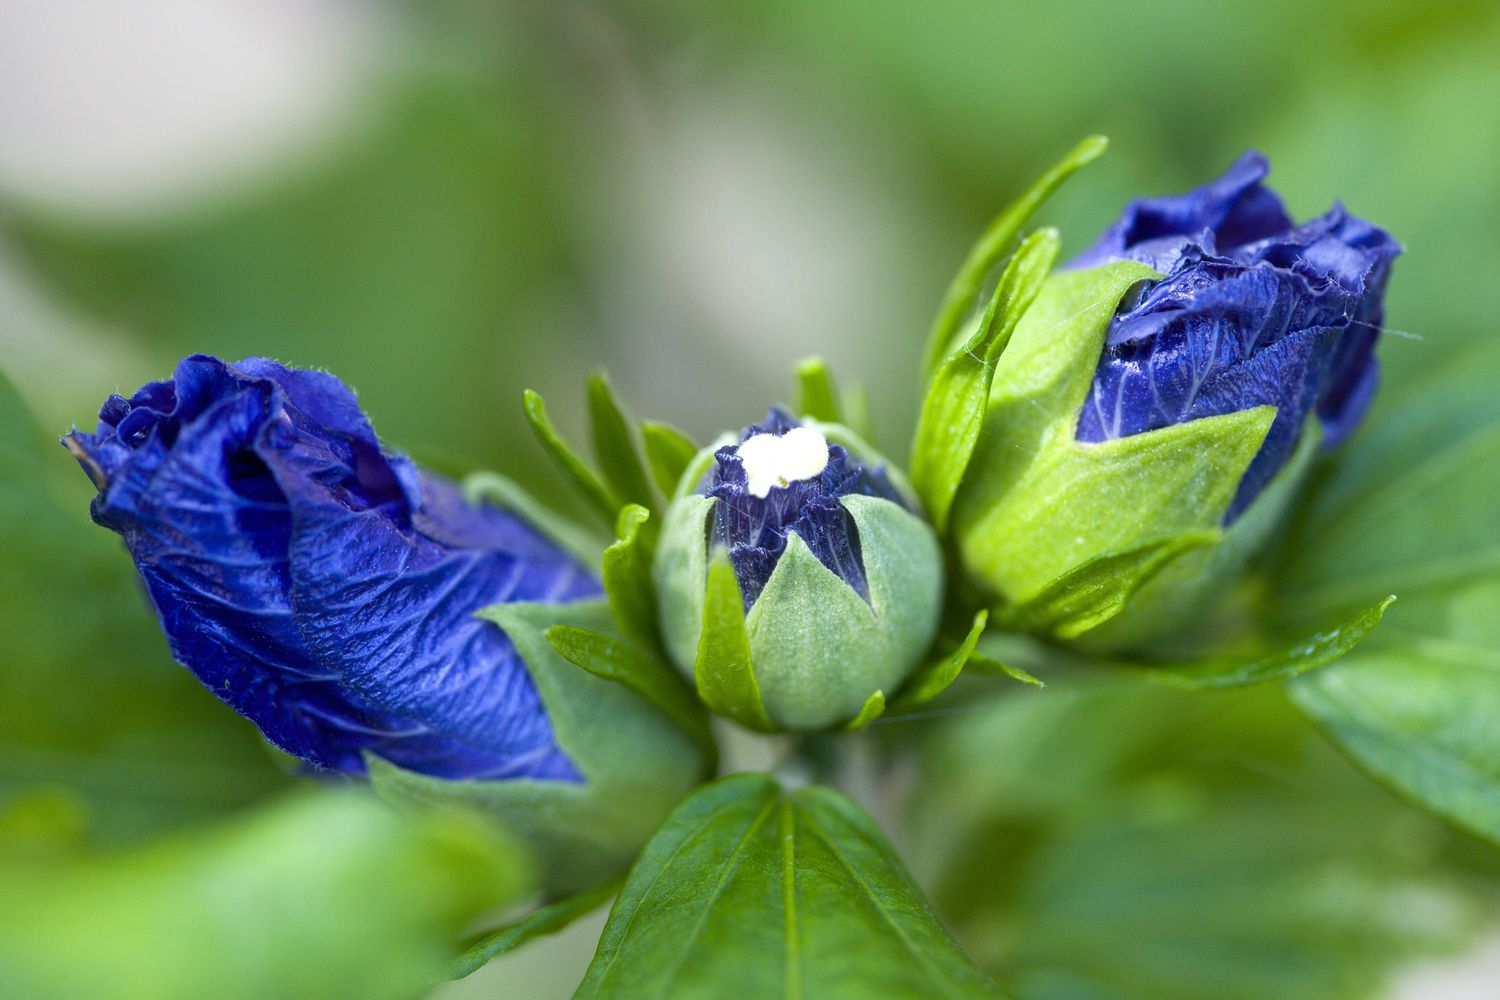 Blaue Knospen des Blue Bird Rose of Sharon Strauches.